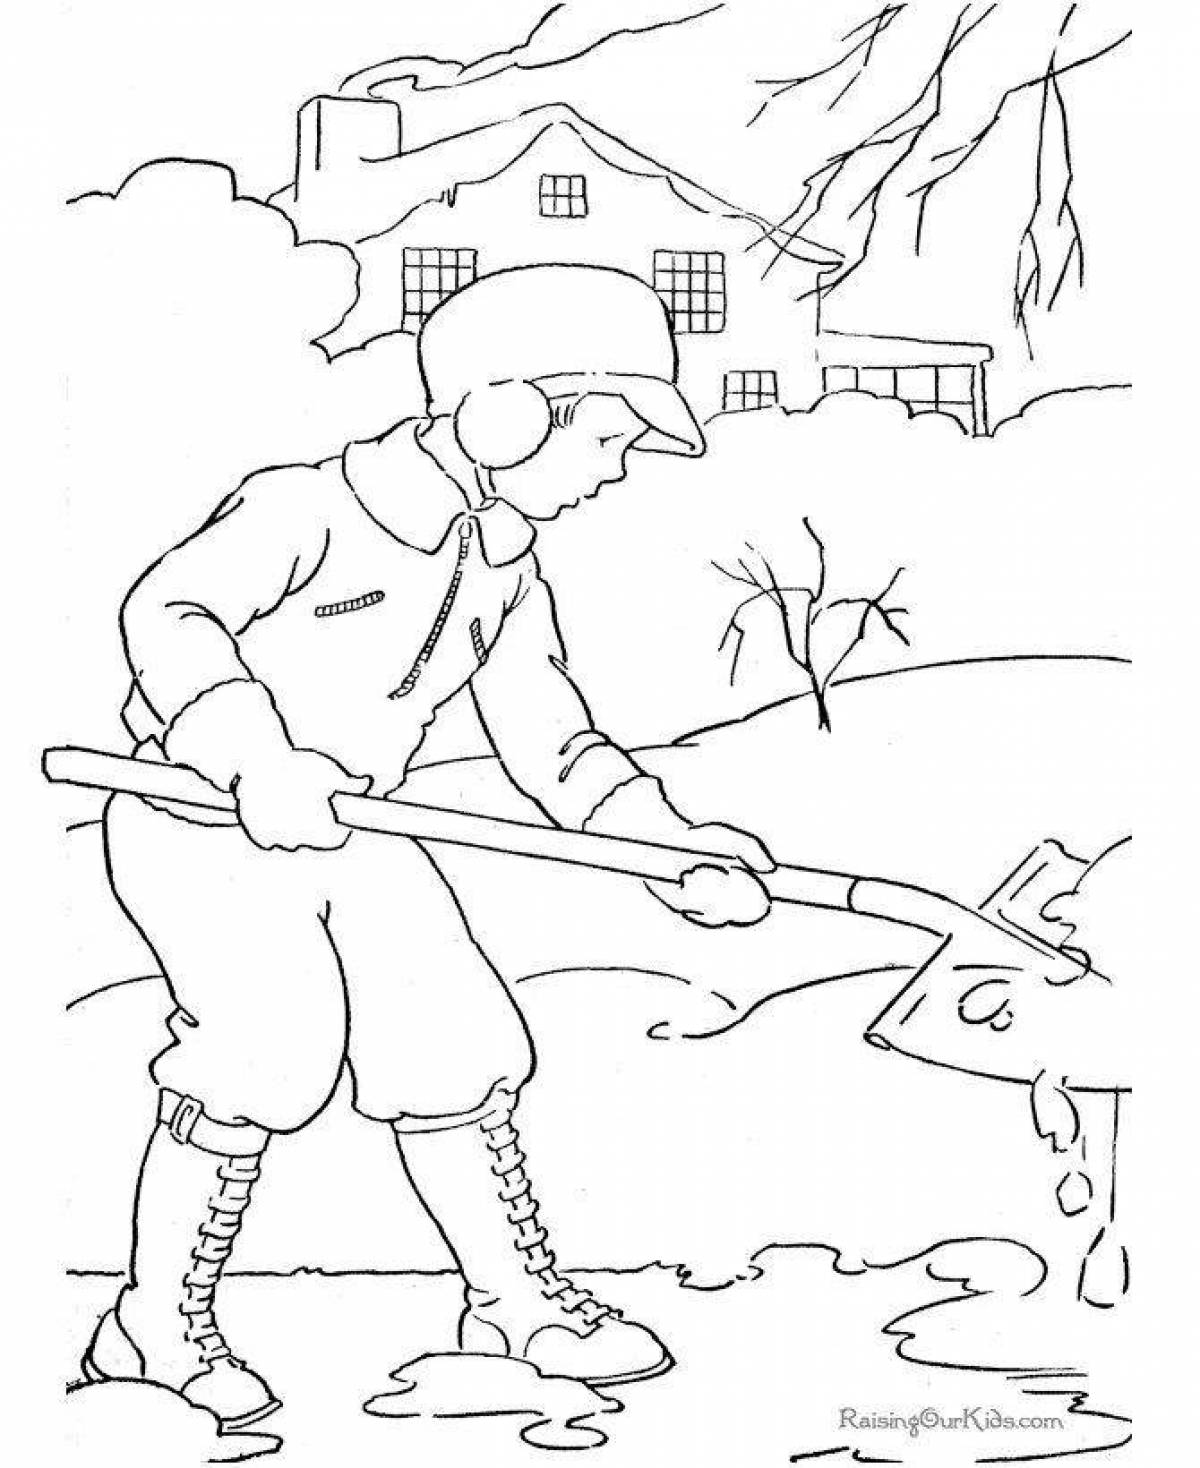 Гламурная раскраска о сельскохозяйственных работах зимой